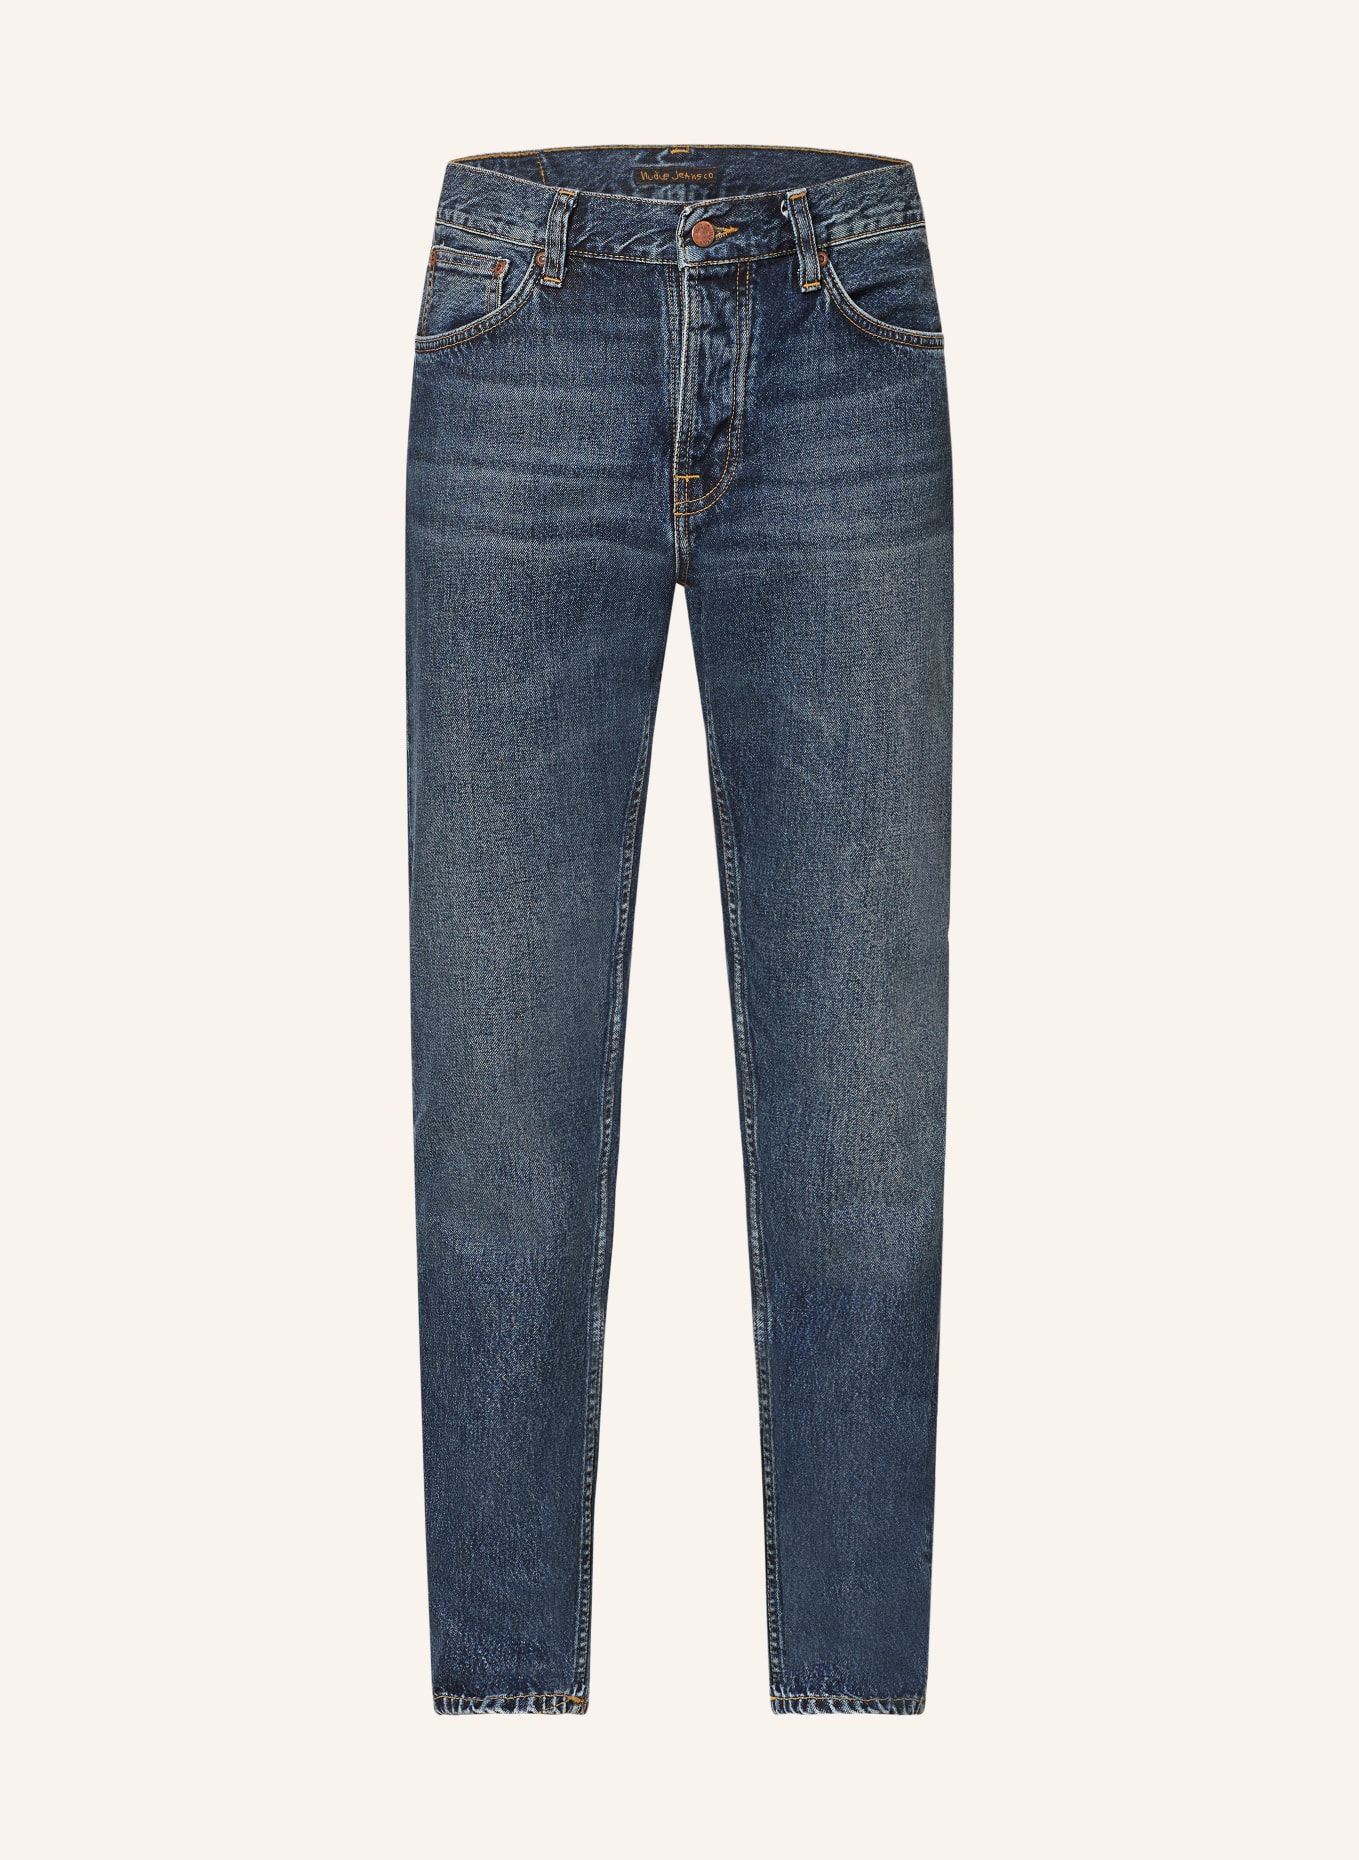 Nudie Jeans Jeans STEADY EDDIE II Slim Fit, Farbe: BLUE SOIL (Bild 1)